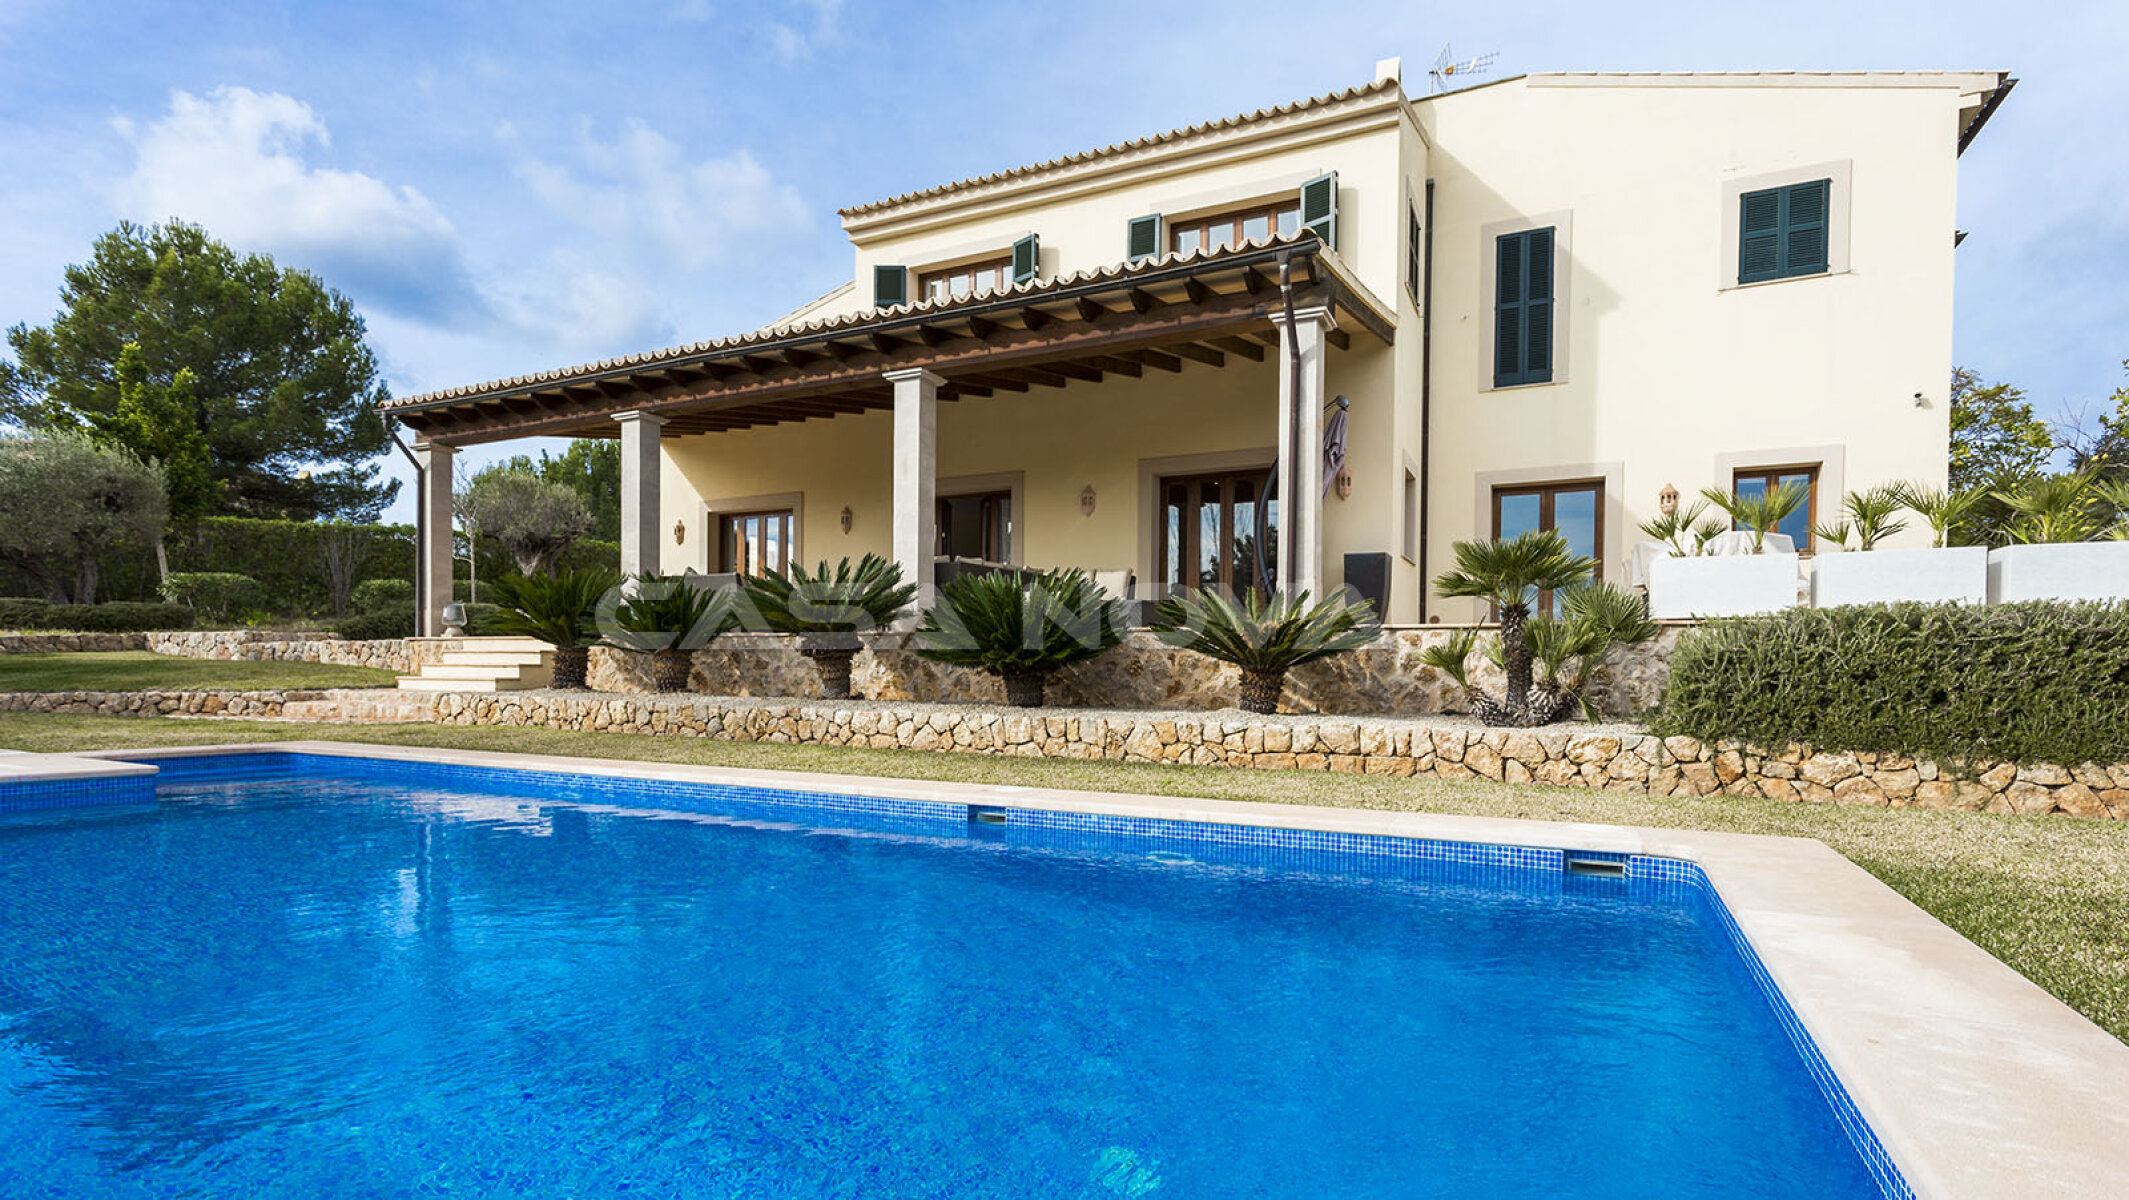 Mediterrane Villa mit Pool in beliebter und ruhiger Wohngegend